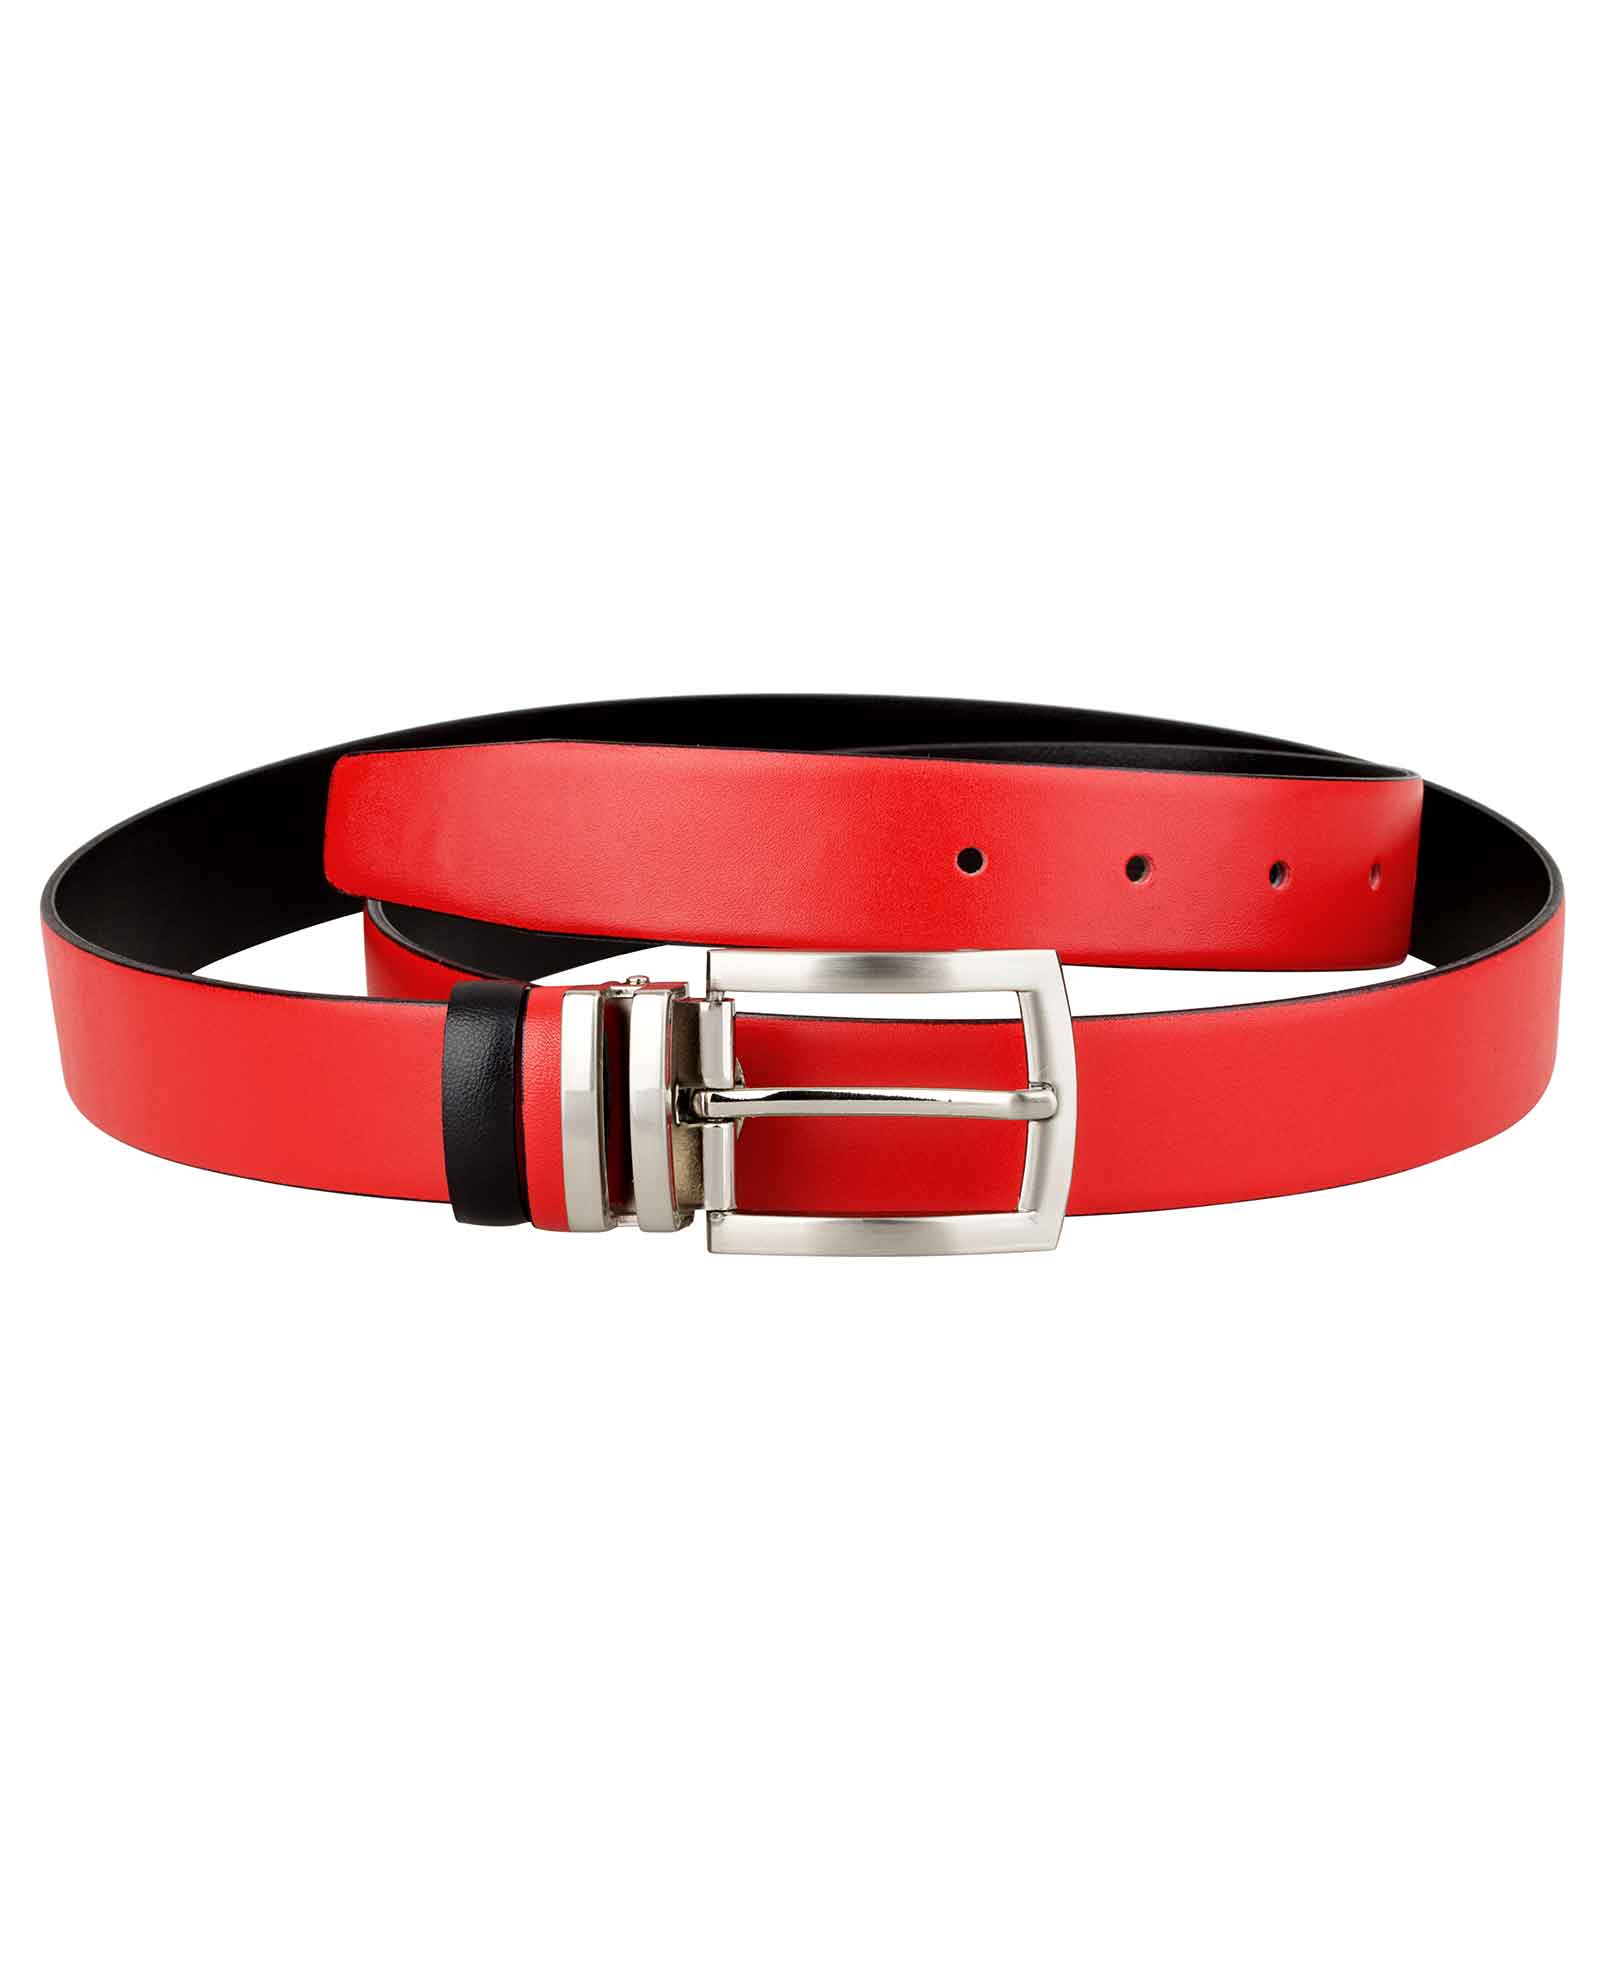 Buy Reversible Red Black Women's Belt - Capo Pelle - Free Shipping